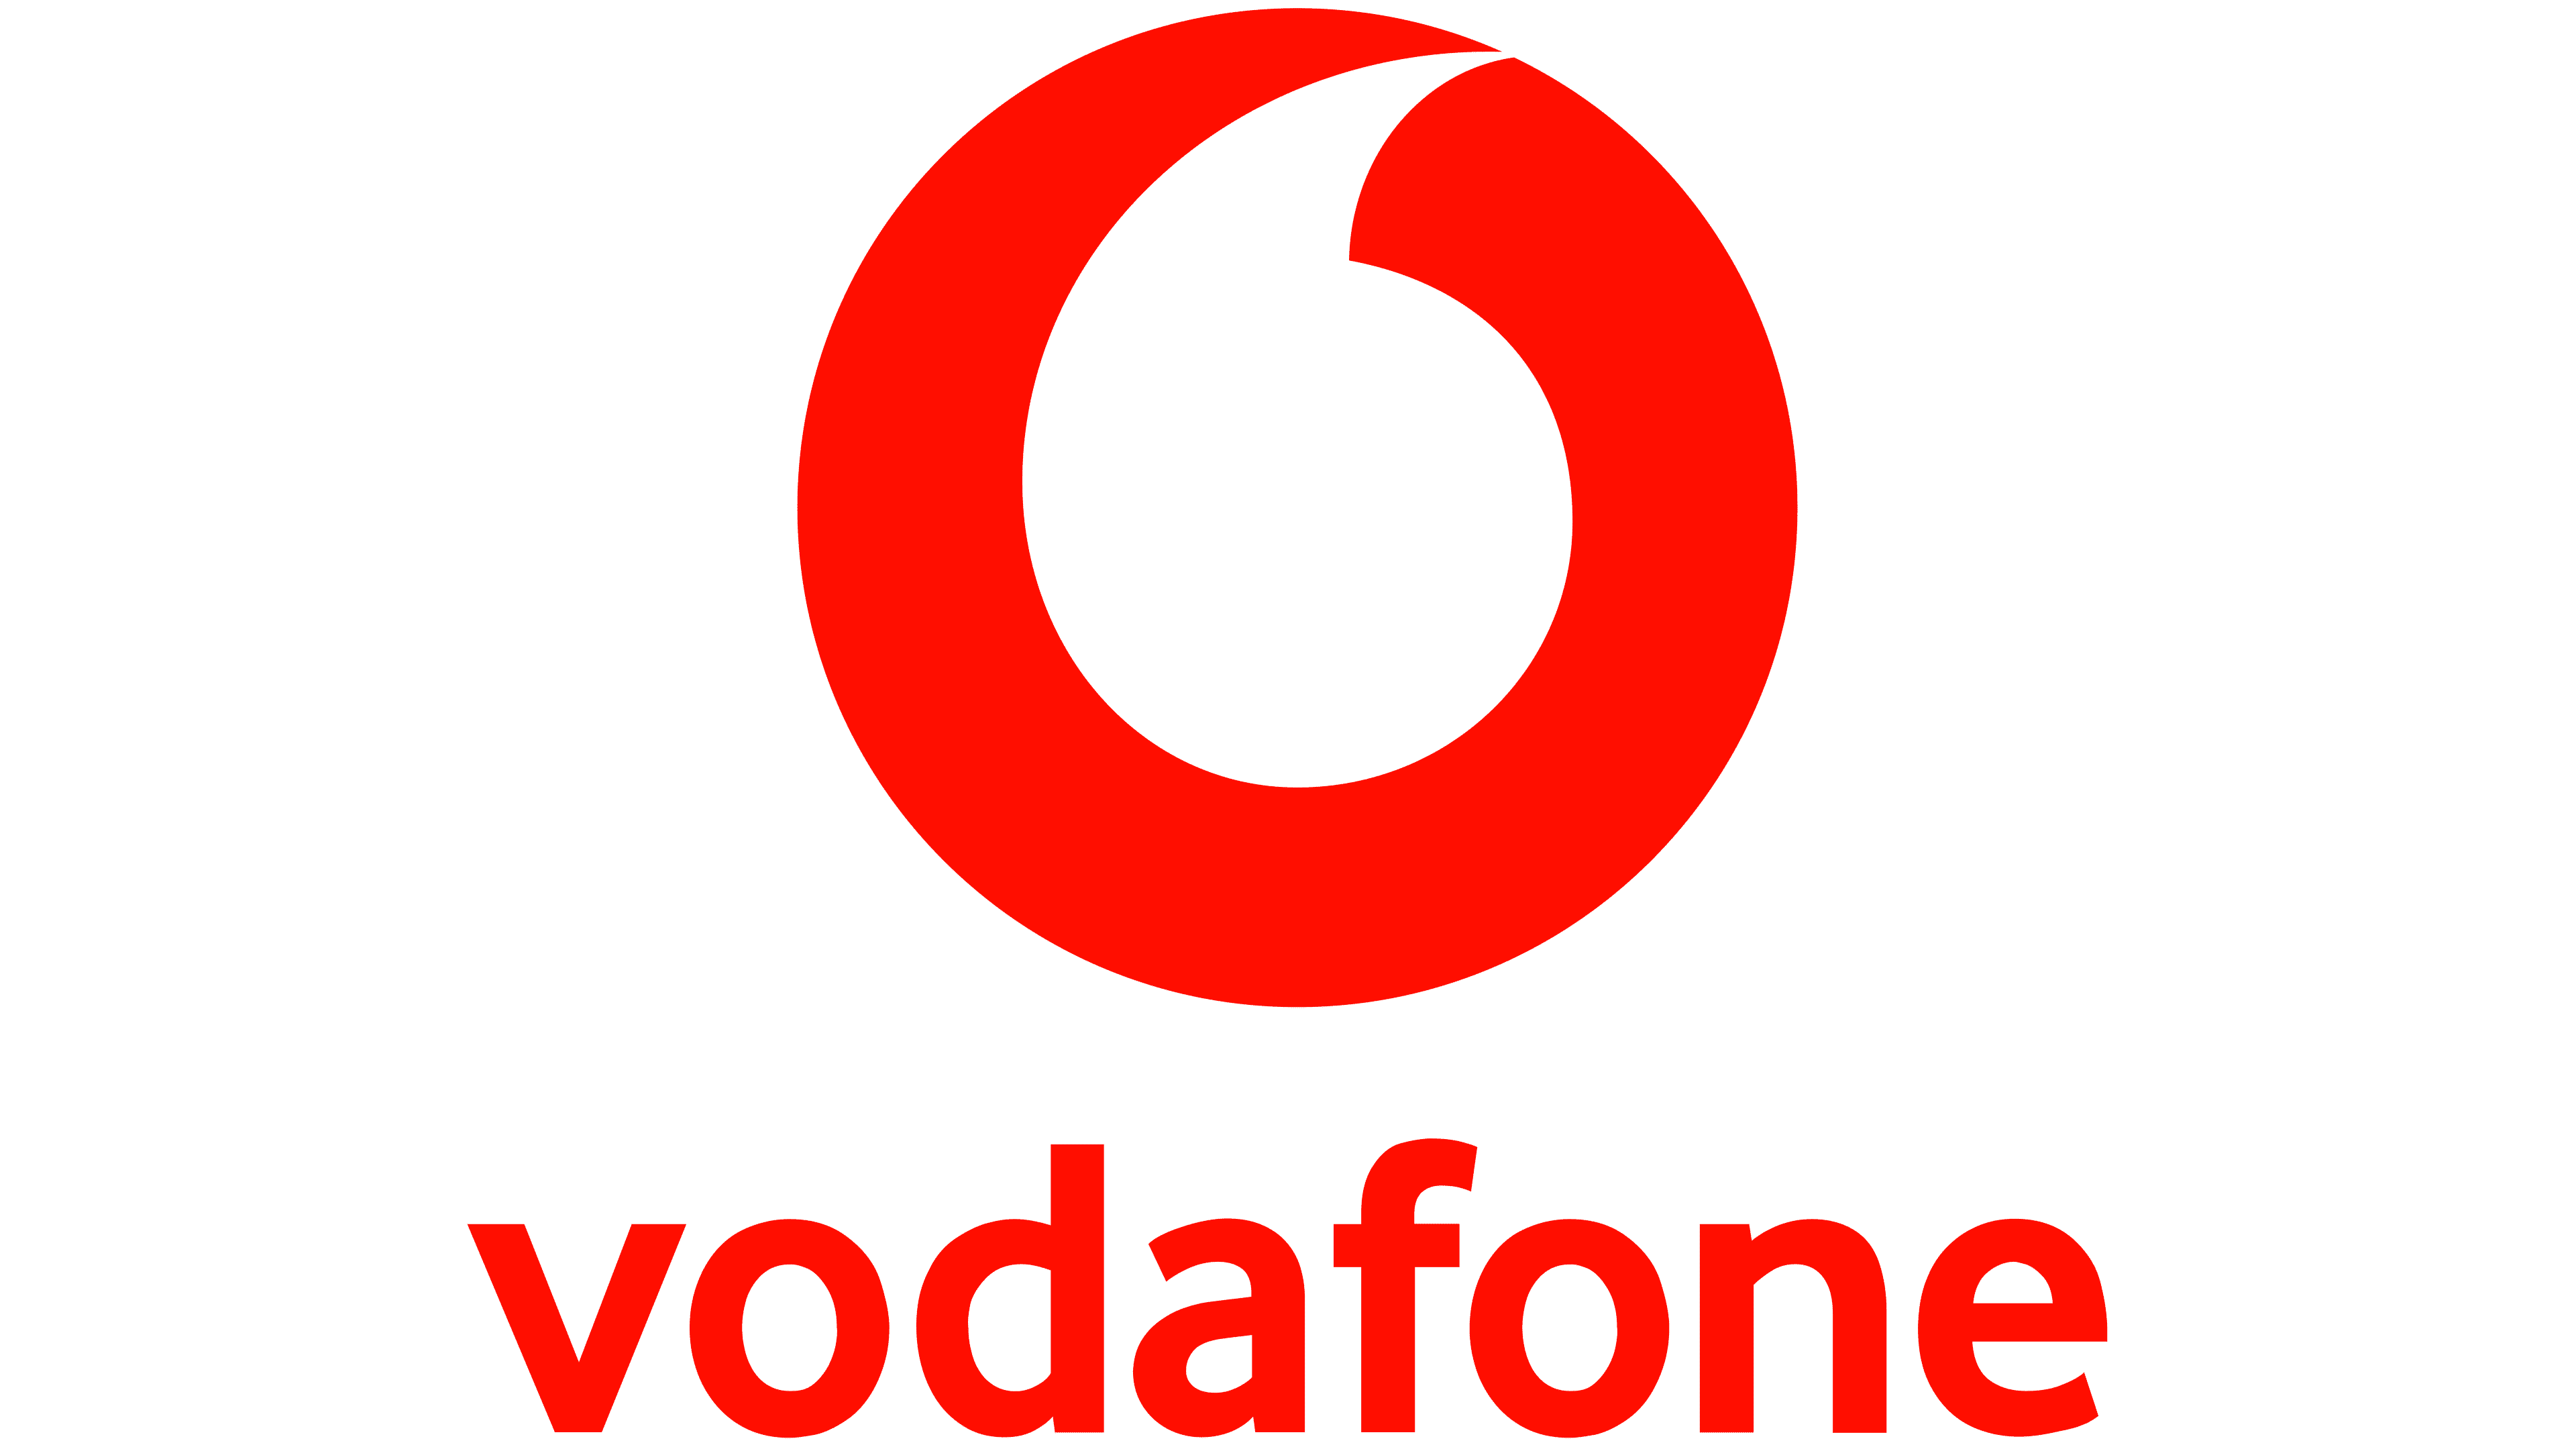 Vodafone - SAP Concur Singapore